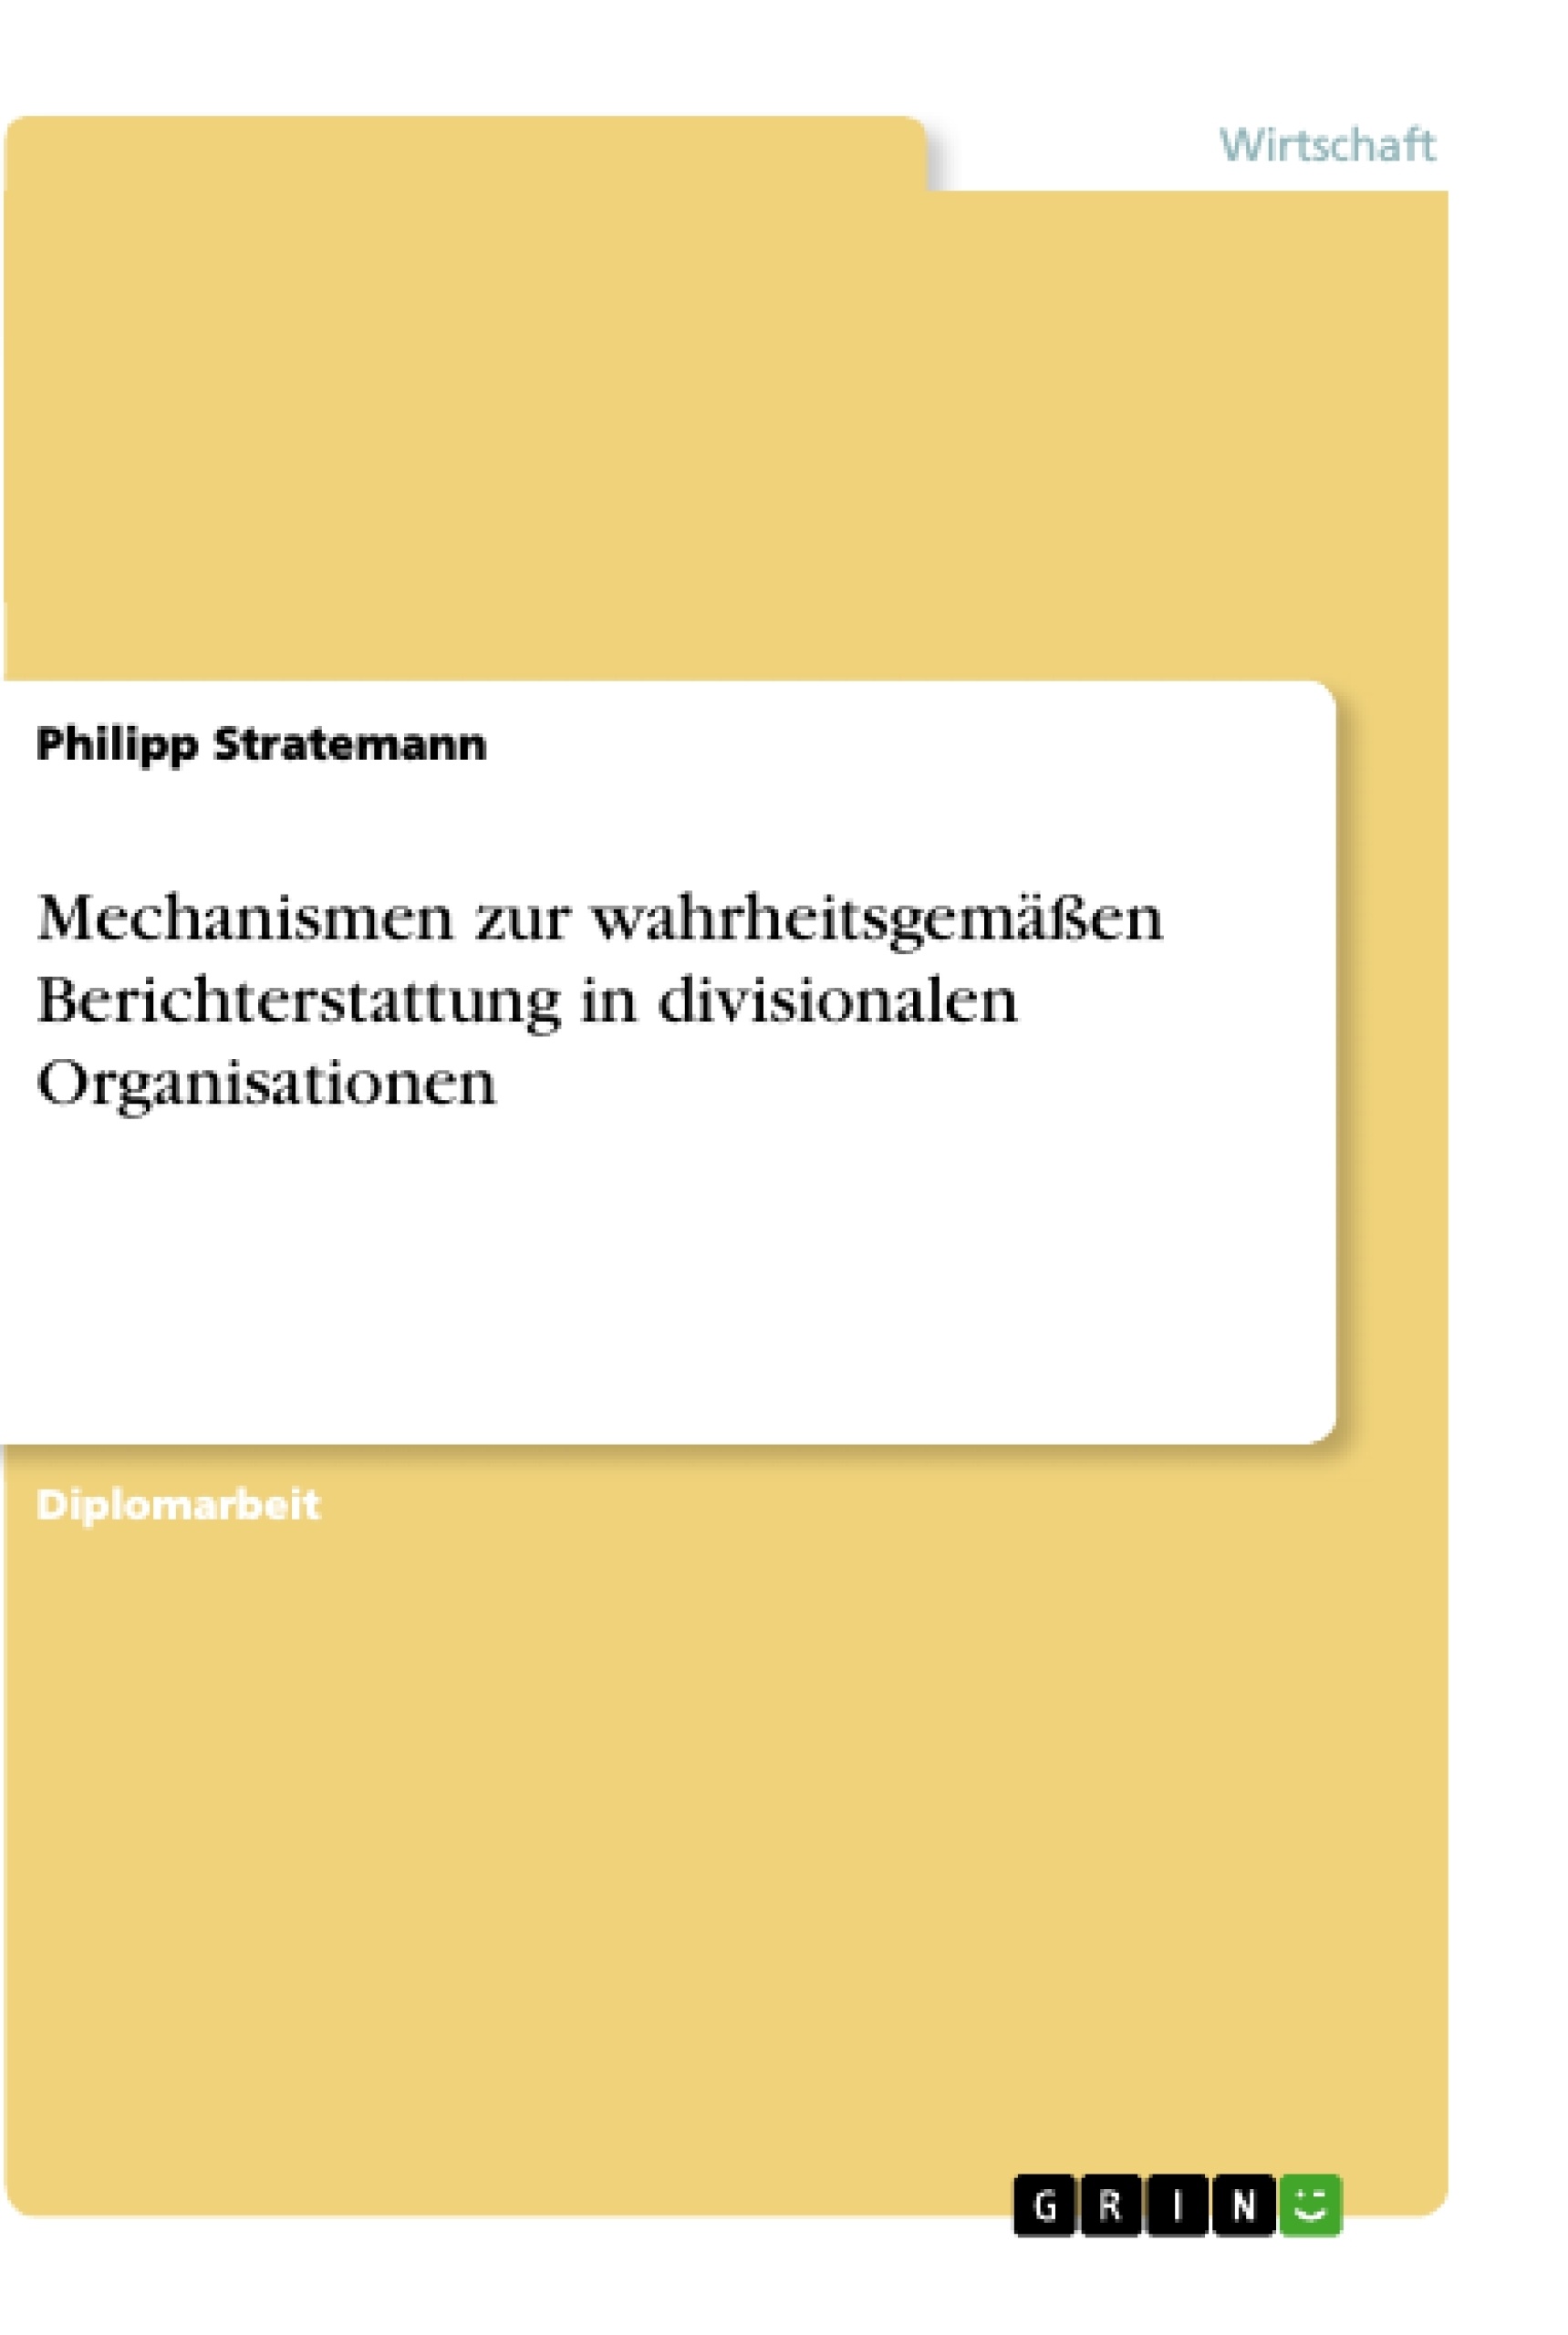 Title: Mechanismen zur wahrheitsgemäßen Berichterstattung in divisionalen Organisationen